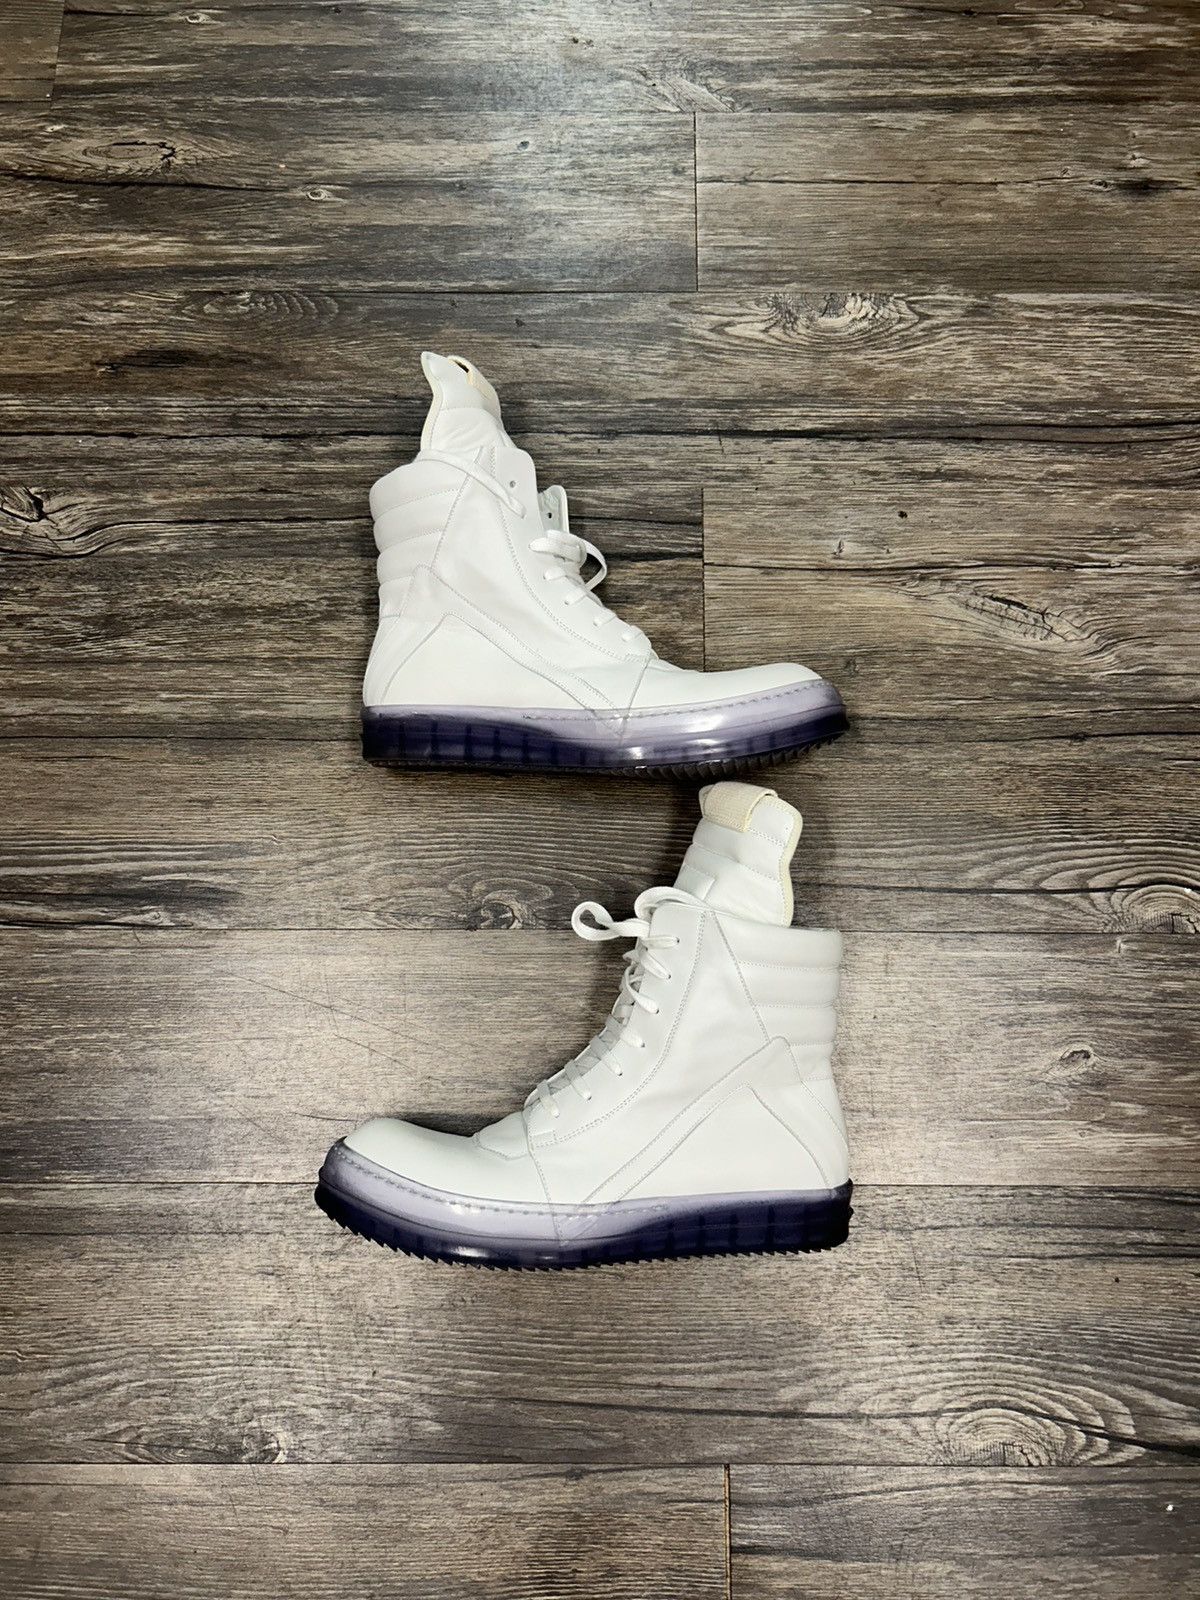 Pre-owned Rick Owens Geobasket Sneakers In White/purple